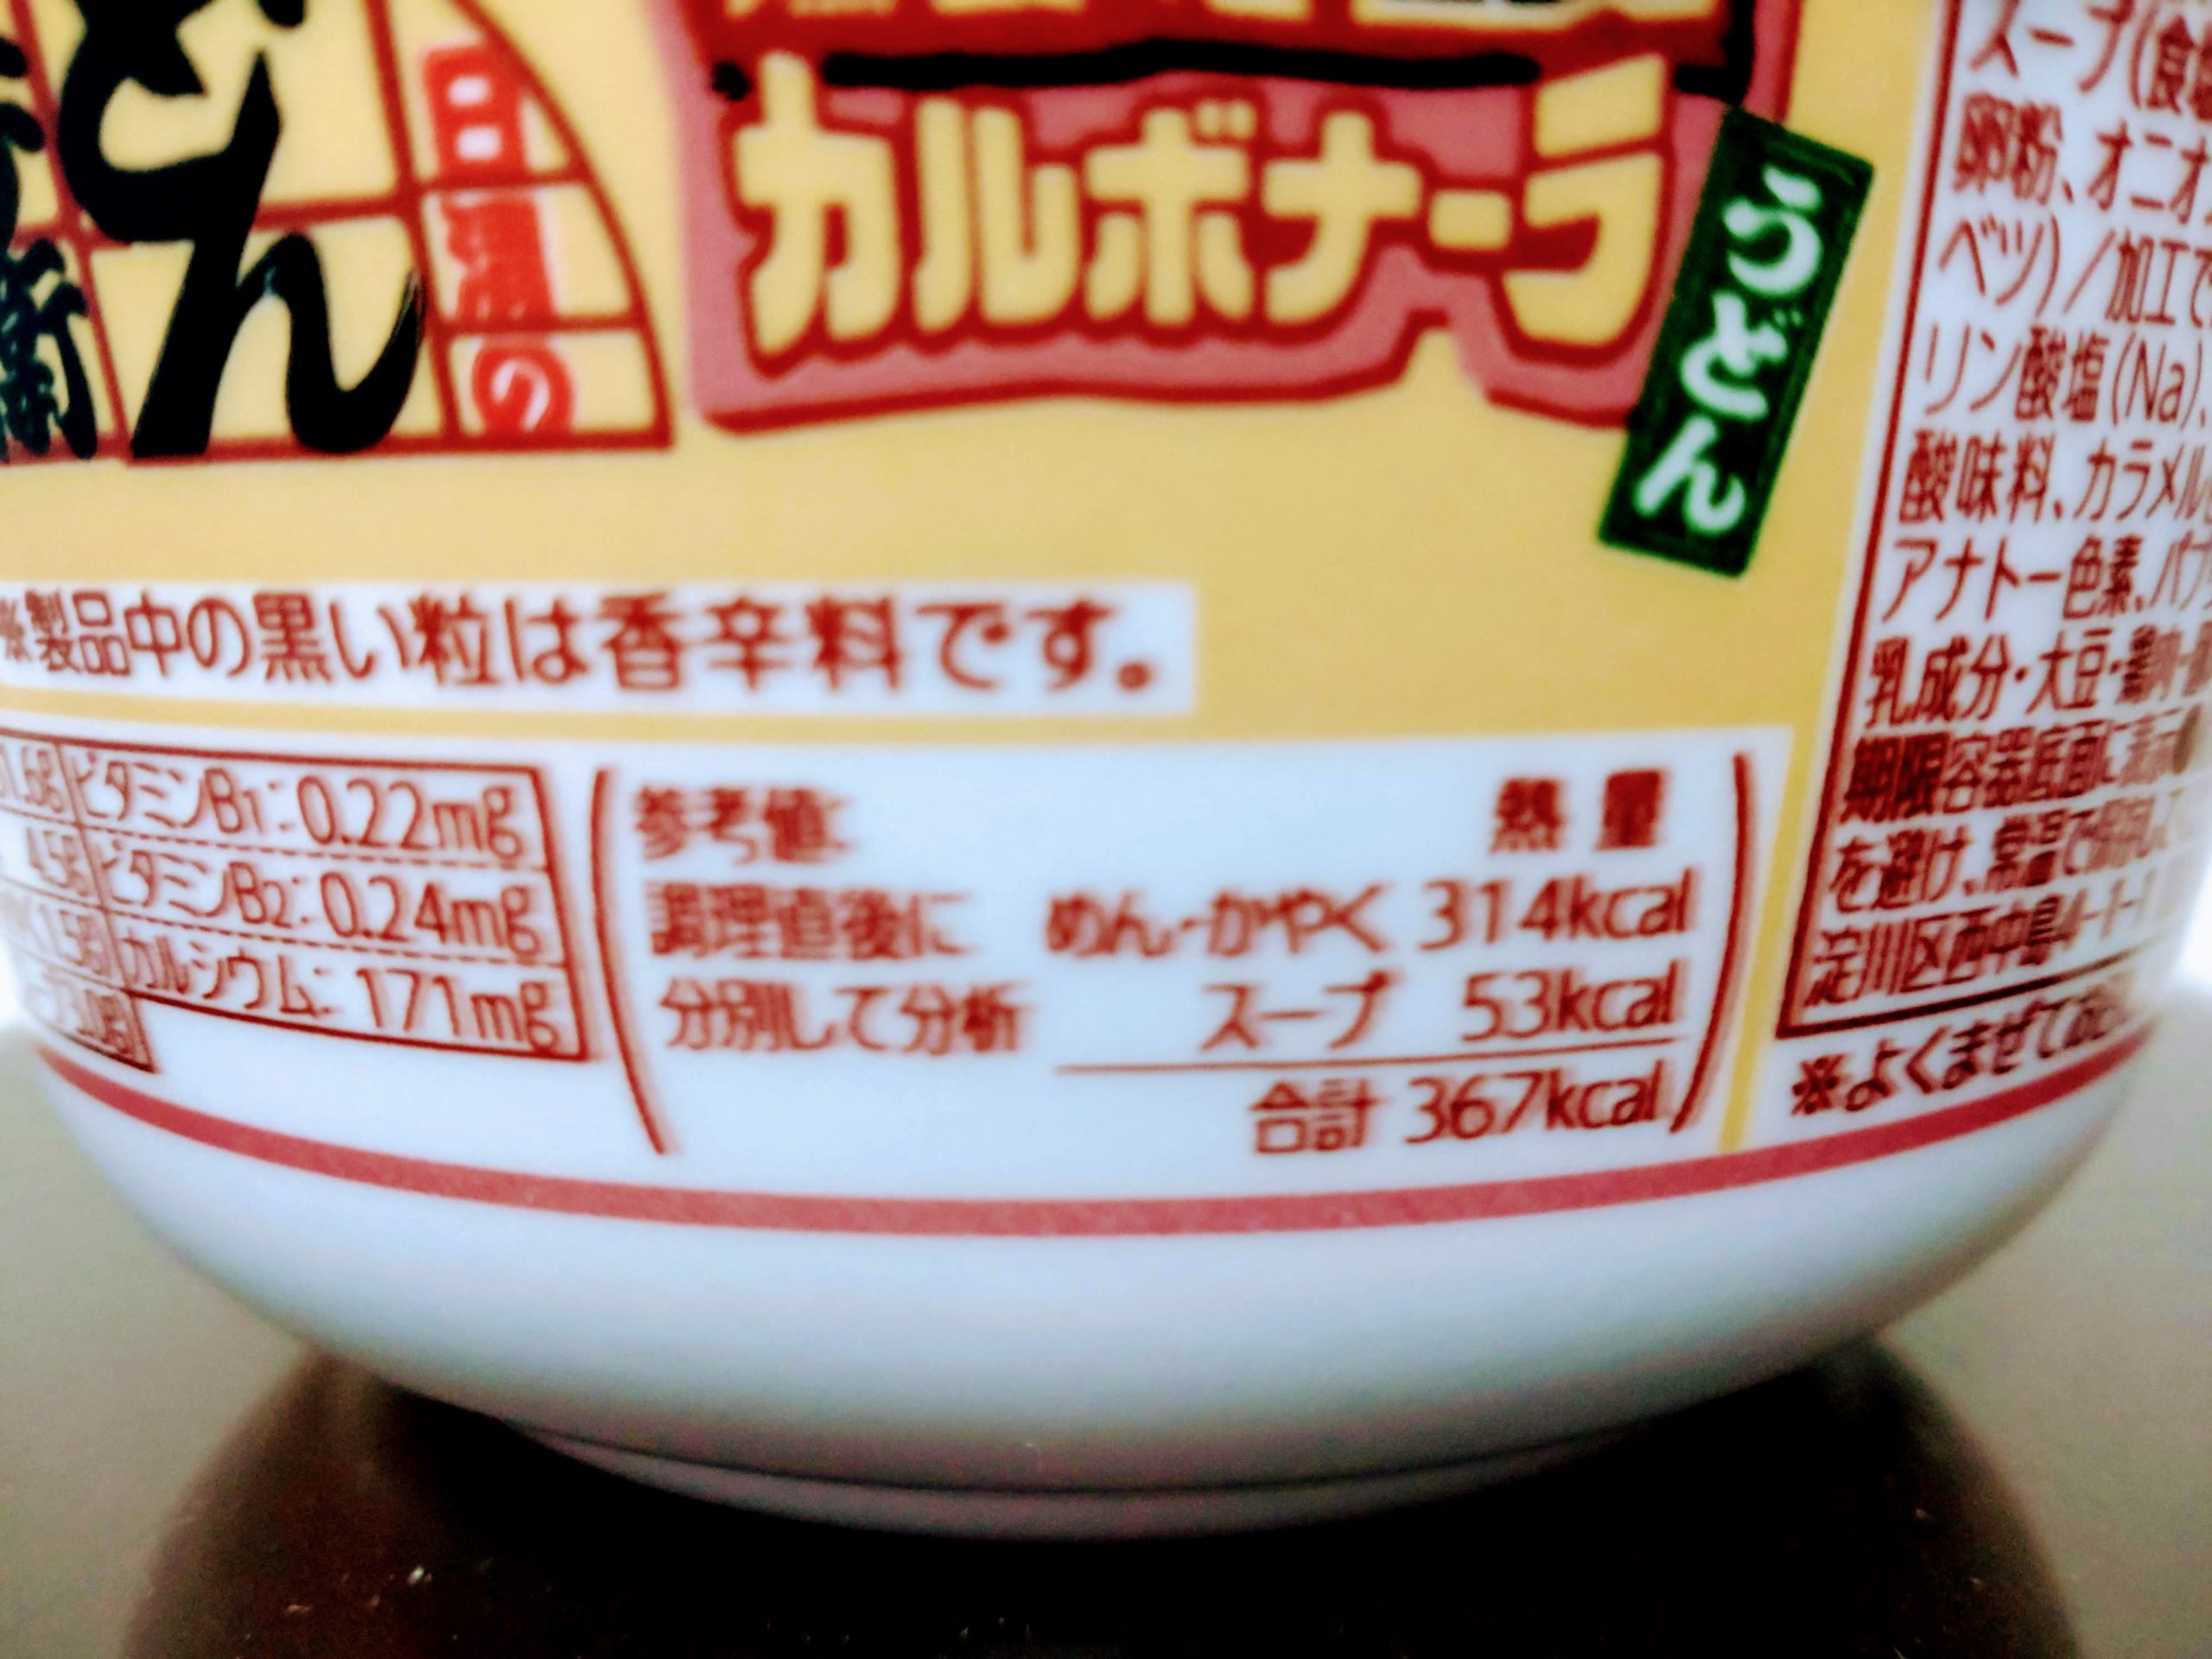 日清のどん兵衛 燻製ベーコンのカルボナーラうどんの栄養成分表示